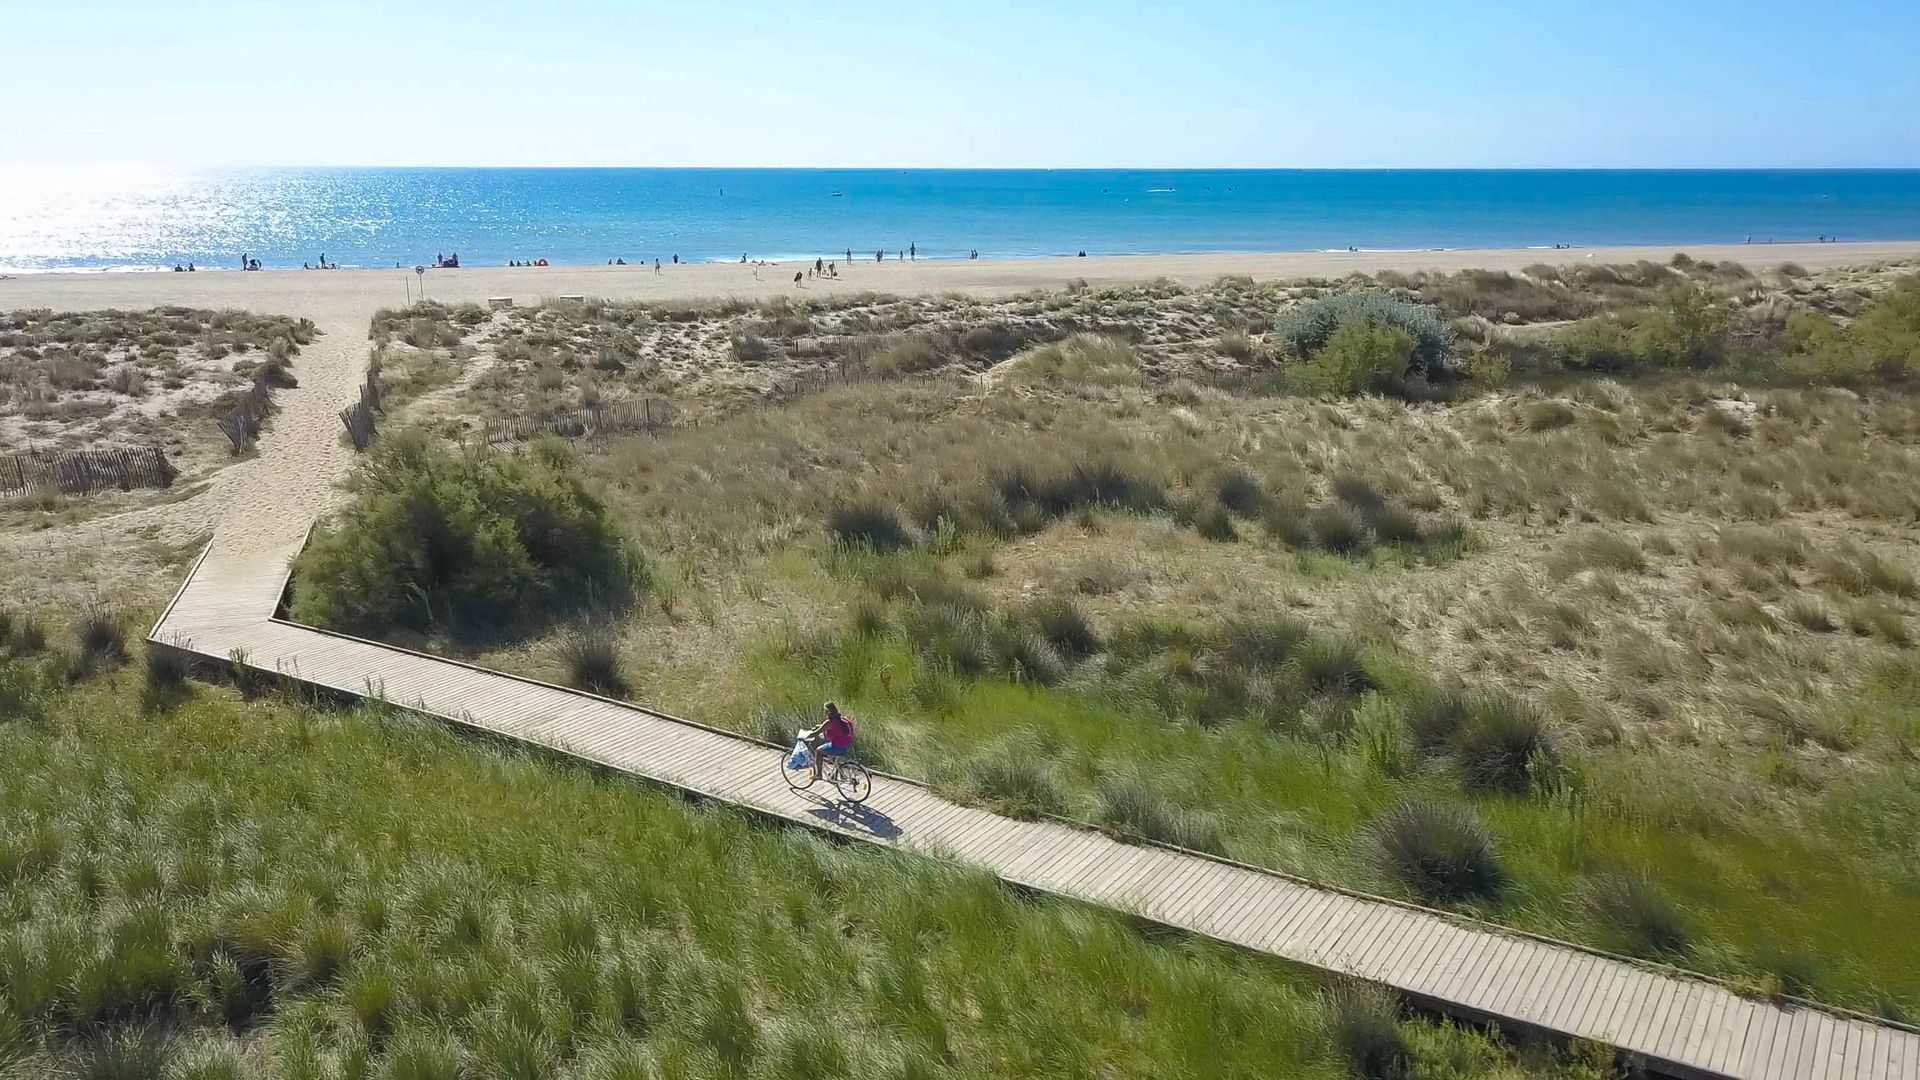 Une femme arrive en vélo à la plage de Vendres via un platelage en bois